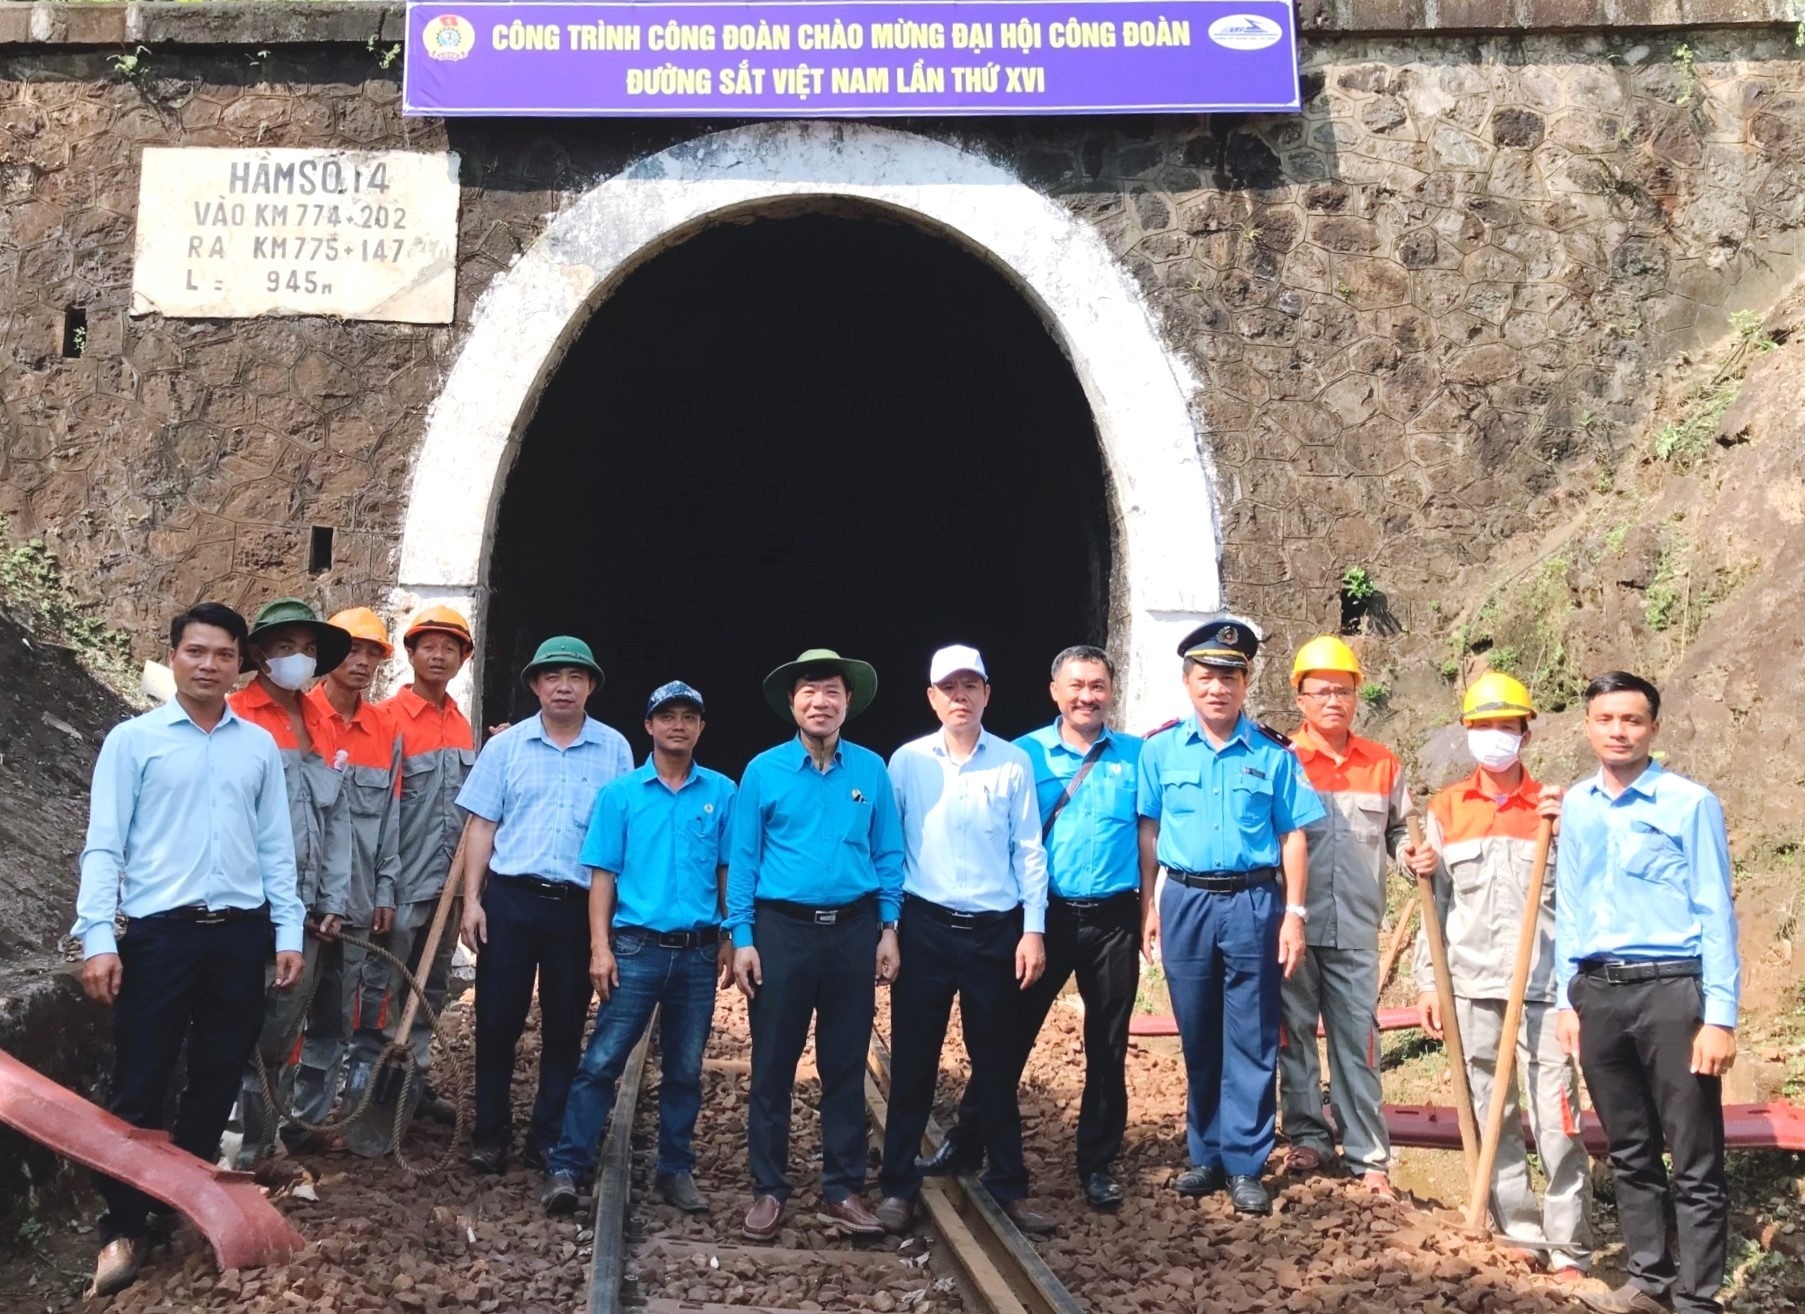 Khởi công dự án trọng điểm chào mừng Đại hội Công đoàn Đường sắt Việt Nam lần thứ XVI